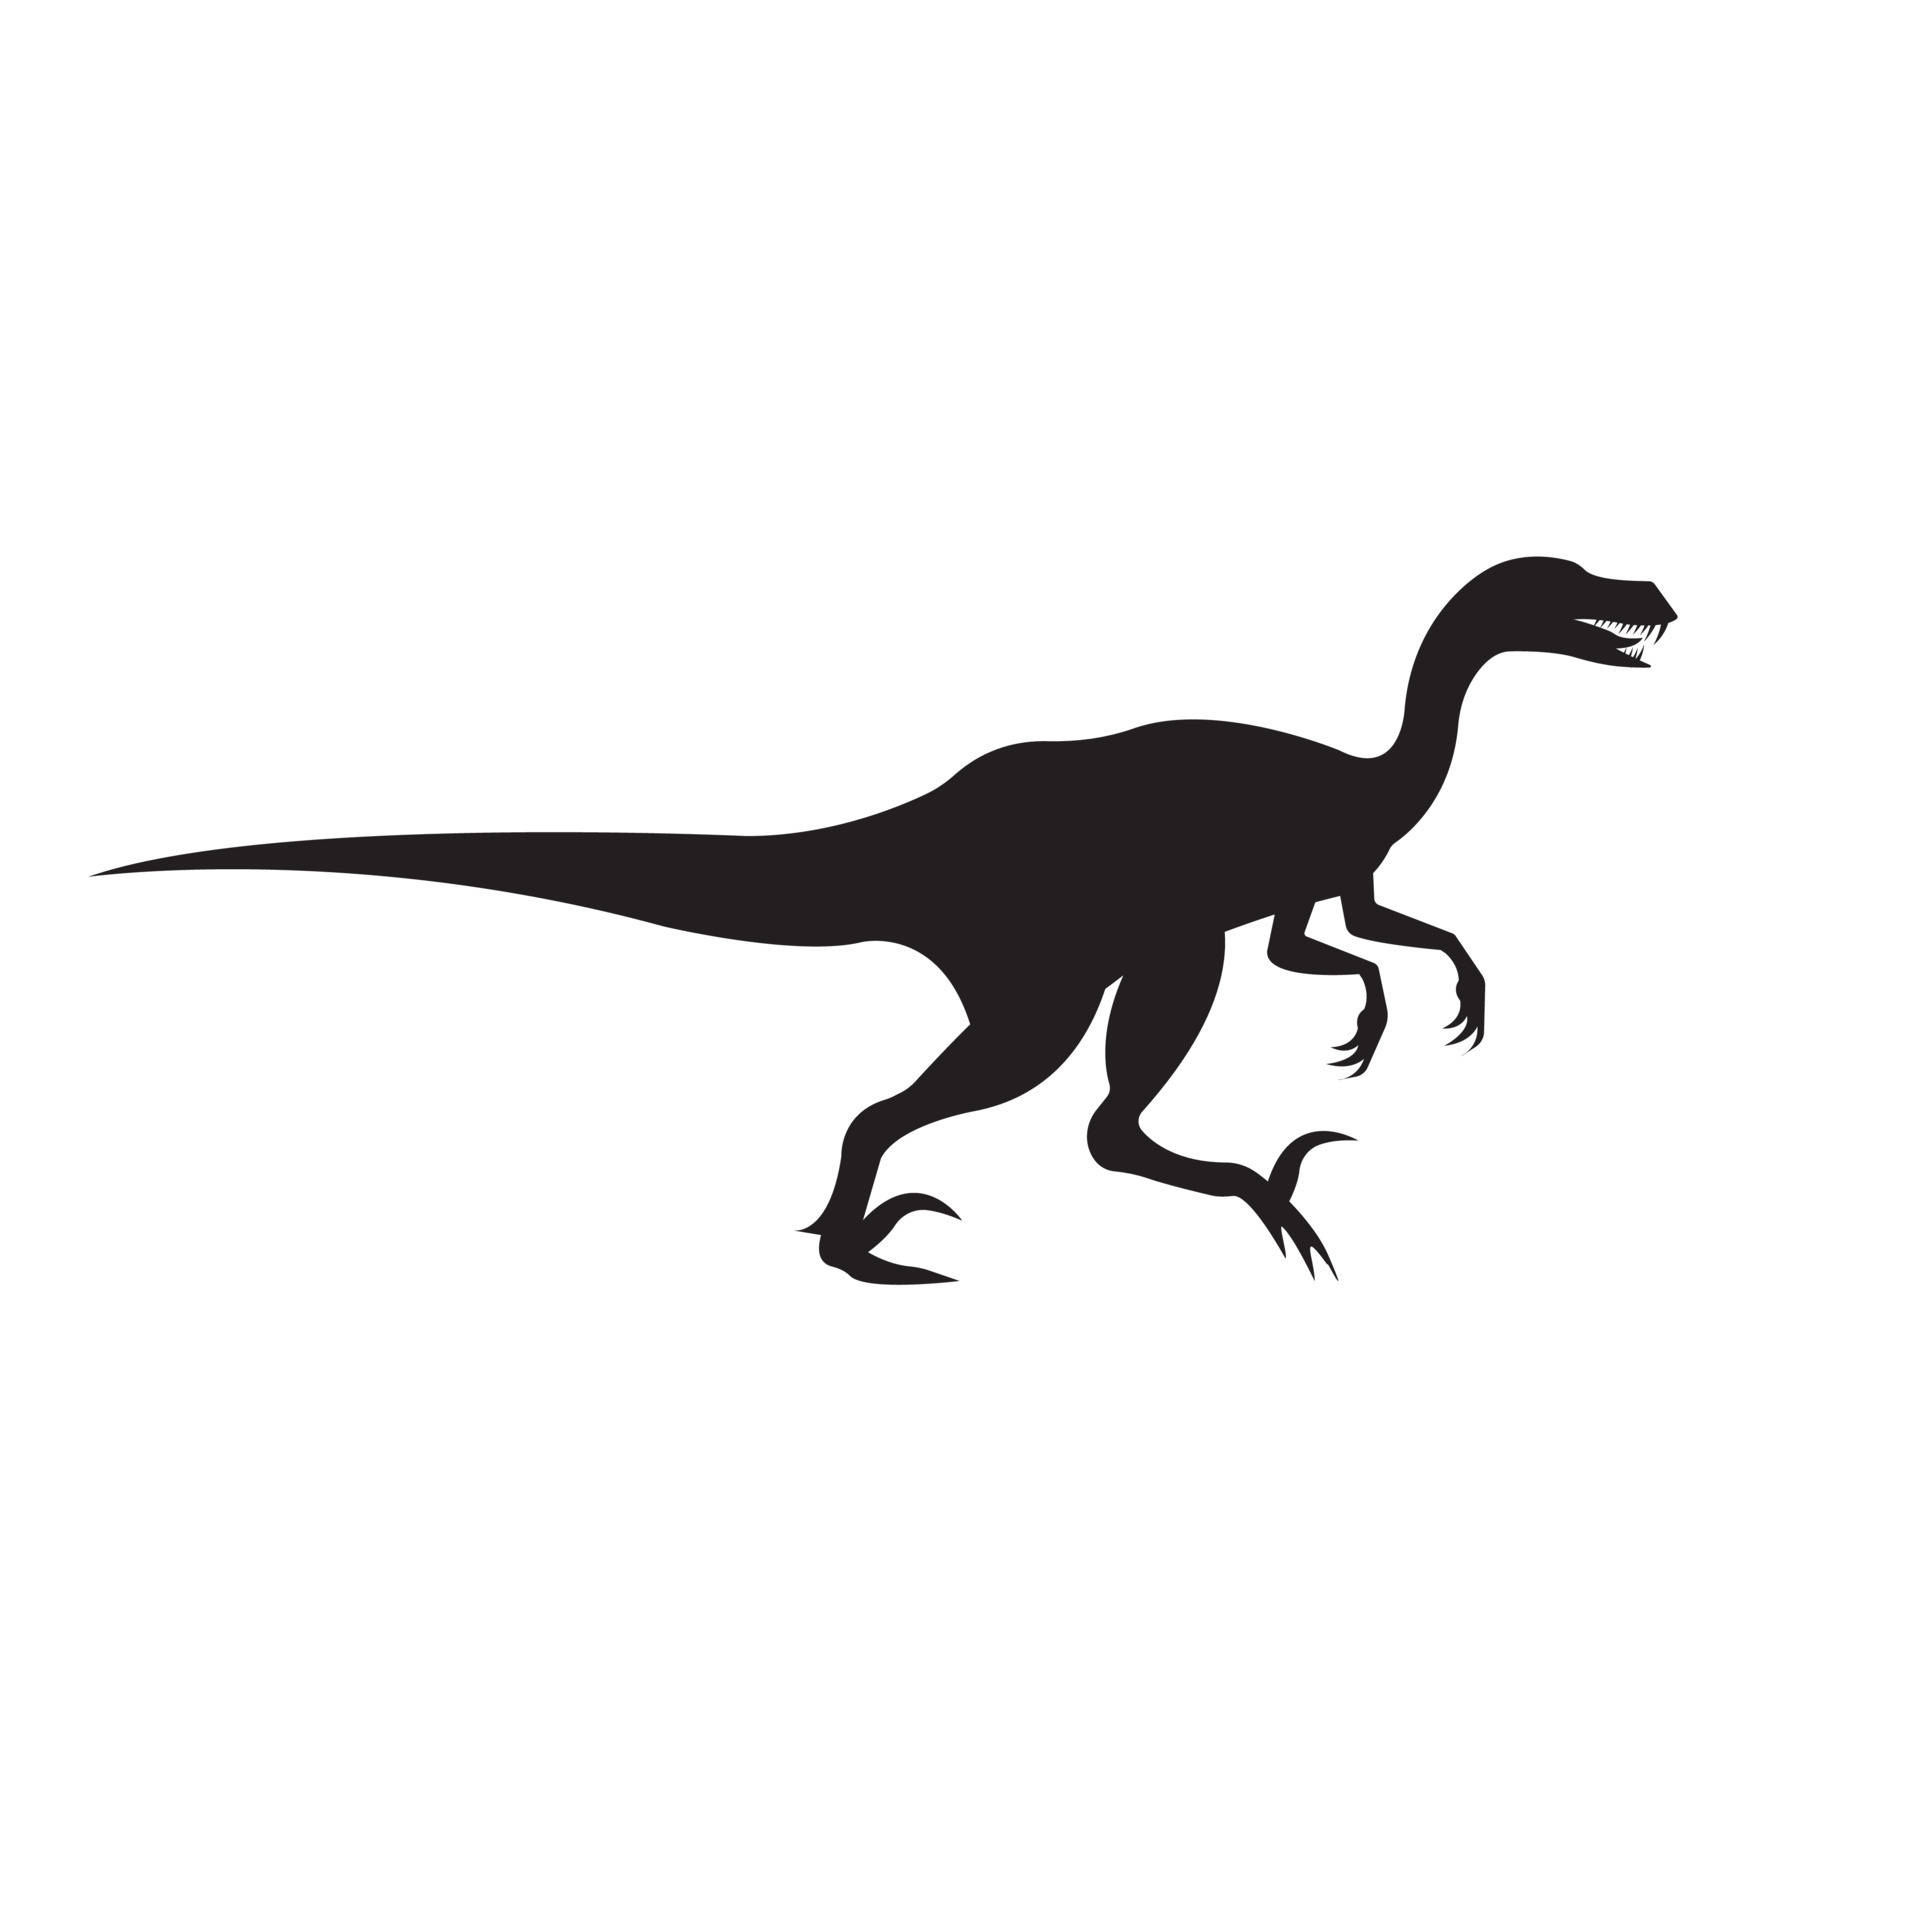 Velociraptor Vectores, Iconos, Gráficos y Fondos para Descargar Gratis